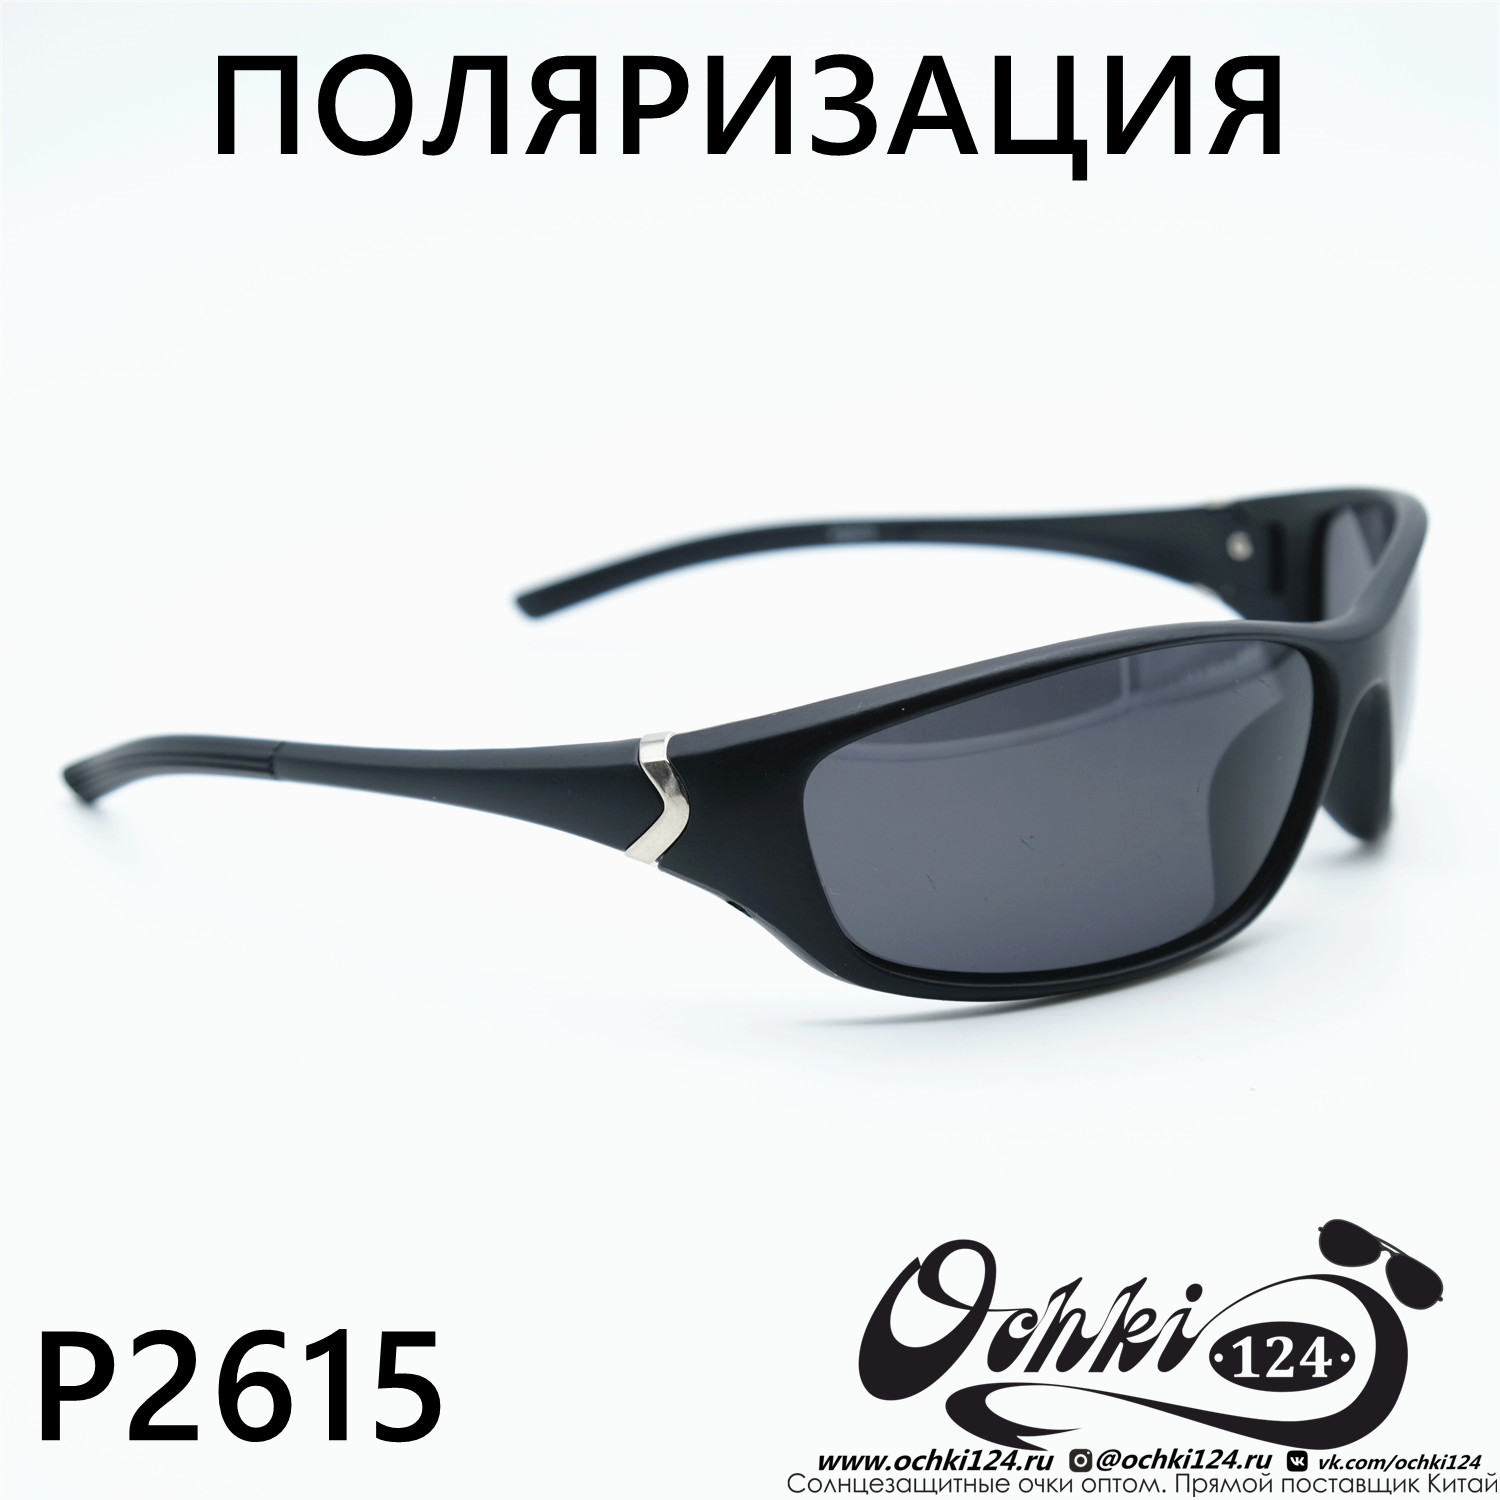  Солнцезащитные очки картинка Мужские MATRIUXT  Прямоугольные P2615-C2 